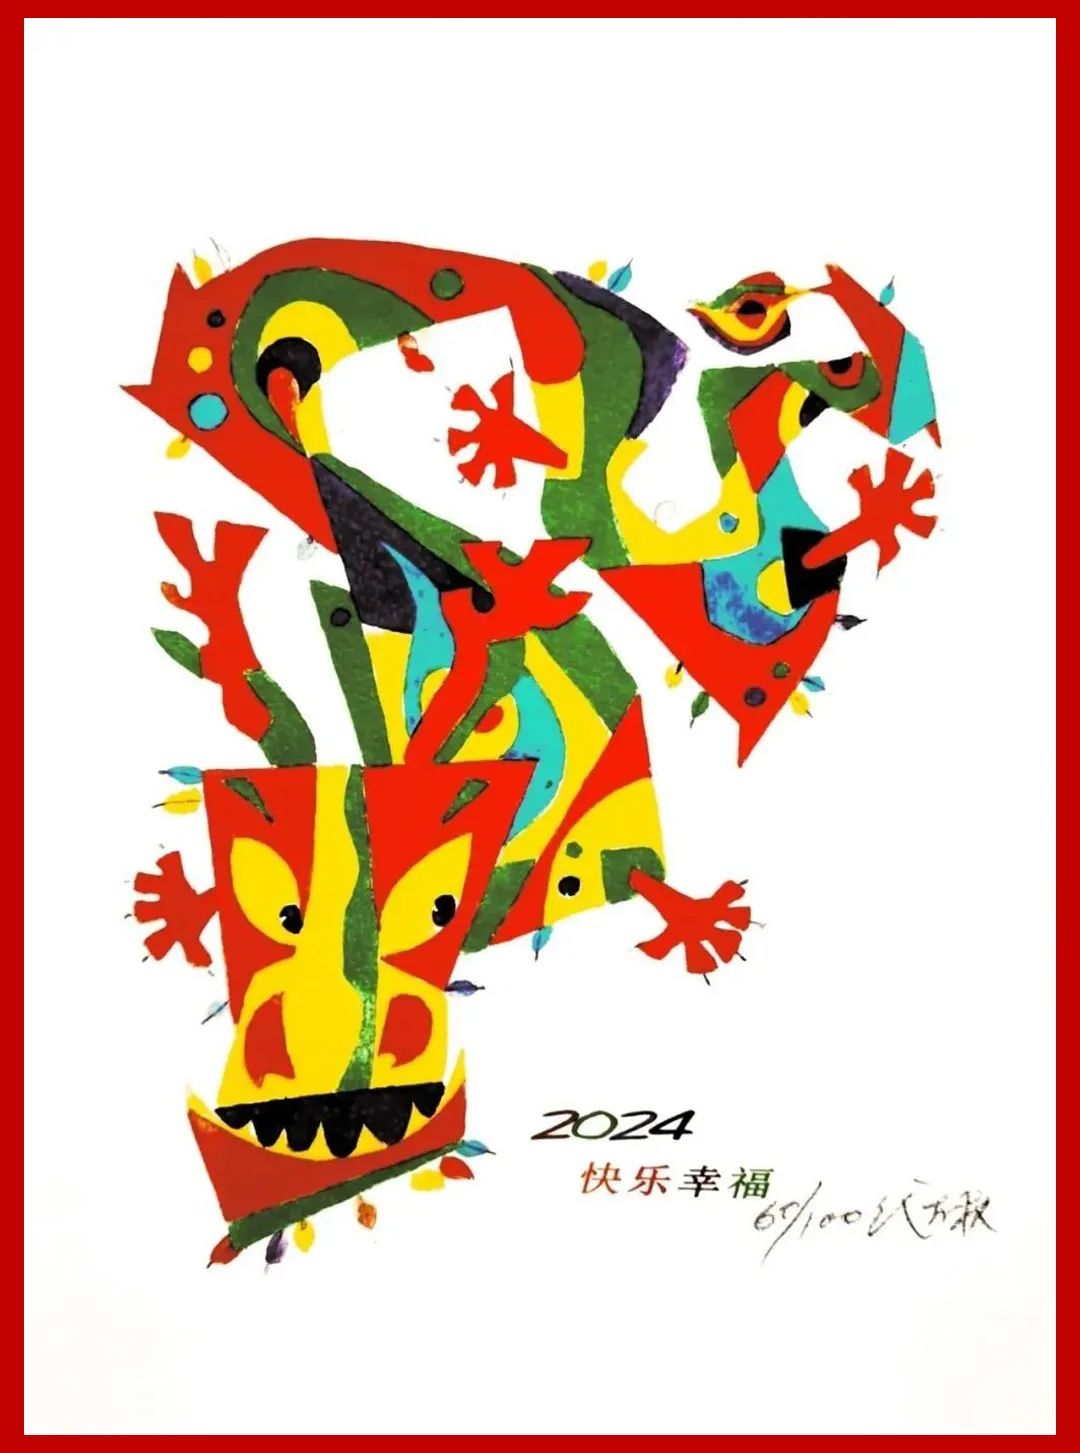 代大权生肖贺岁版画丨在旋转飞腾中找到勇气和希望